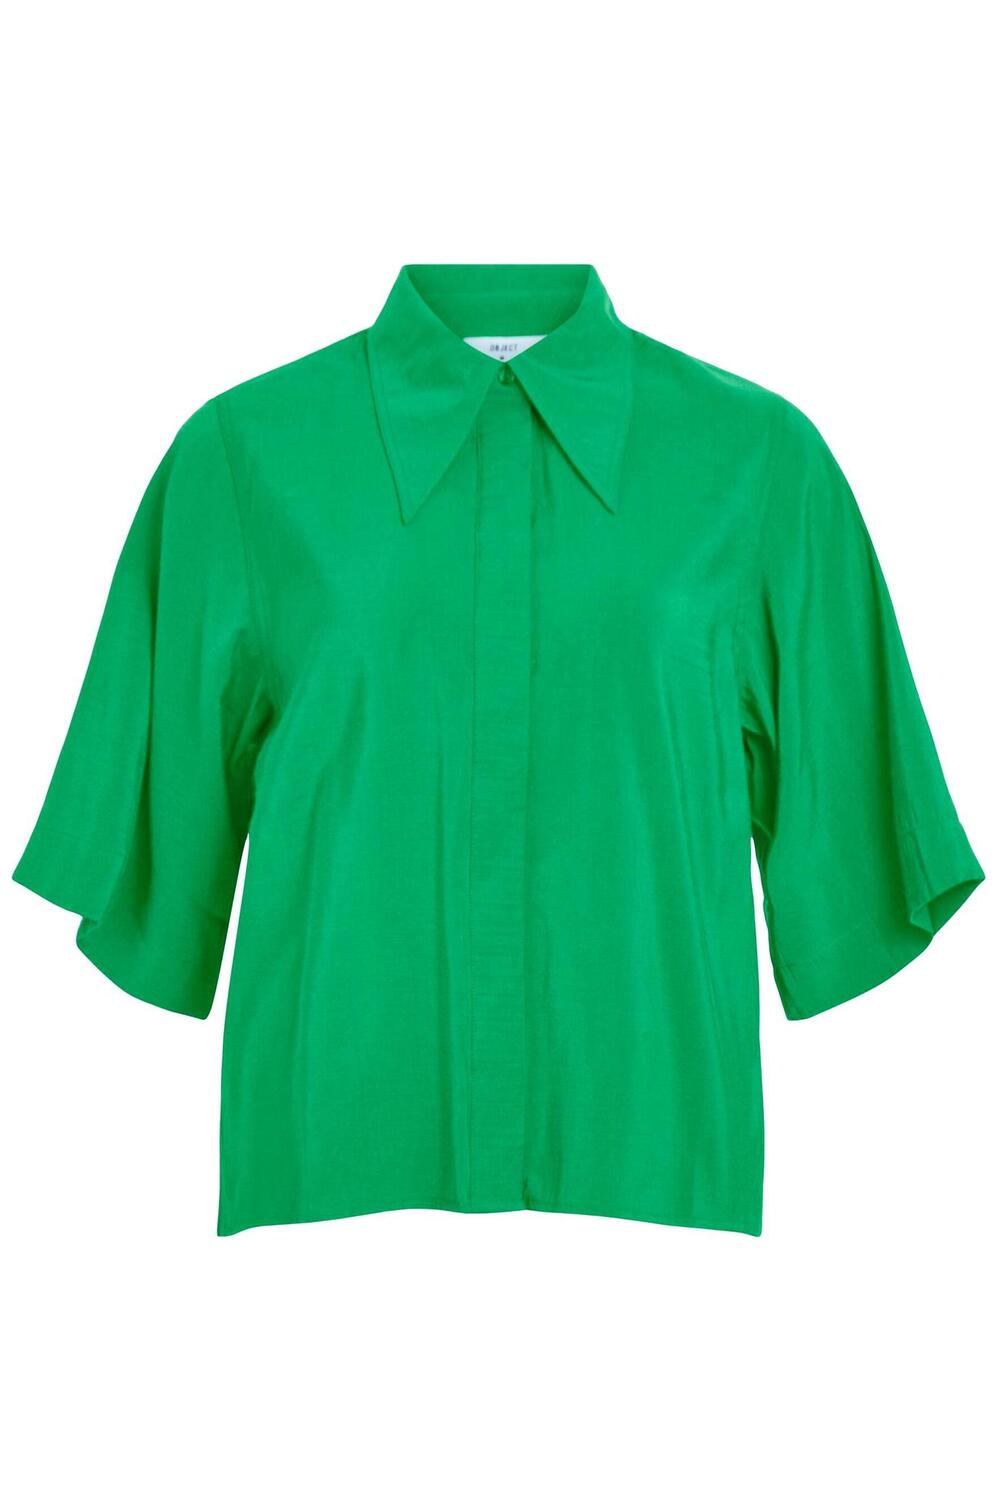 2/4 shirt 125 23041051 object blouse fern green